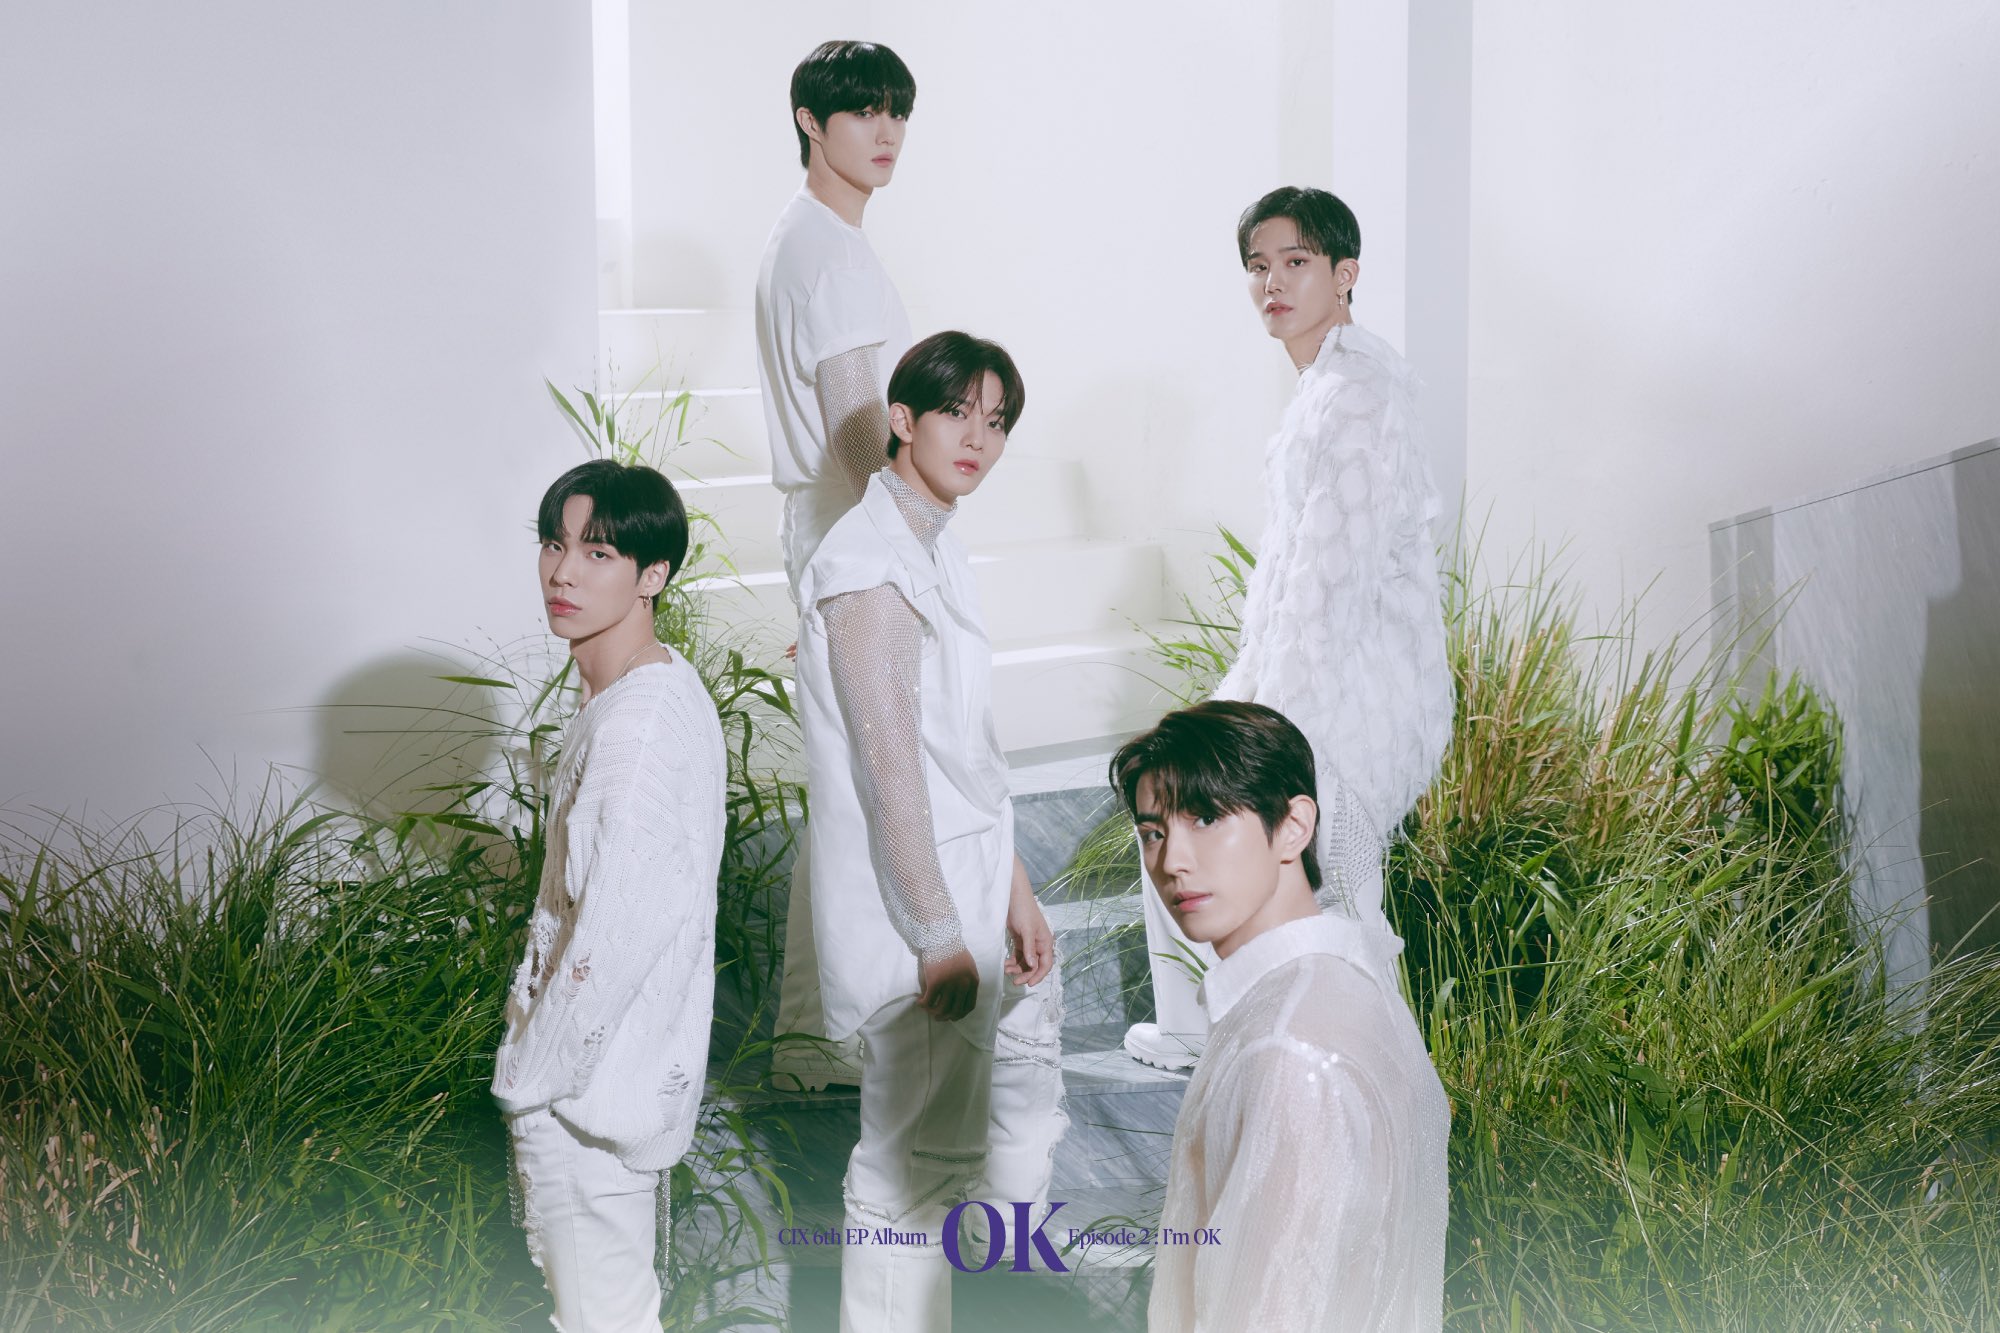 [정보/소식] CIX(씨아이엑스) 6th EP Album 'OK' Episode 2 : I'm OK Group Concept Photo C | 인스티즈